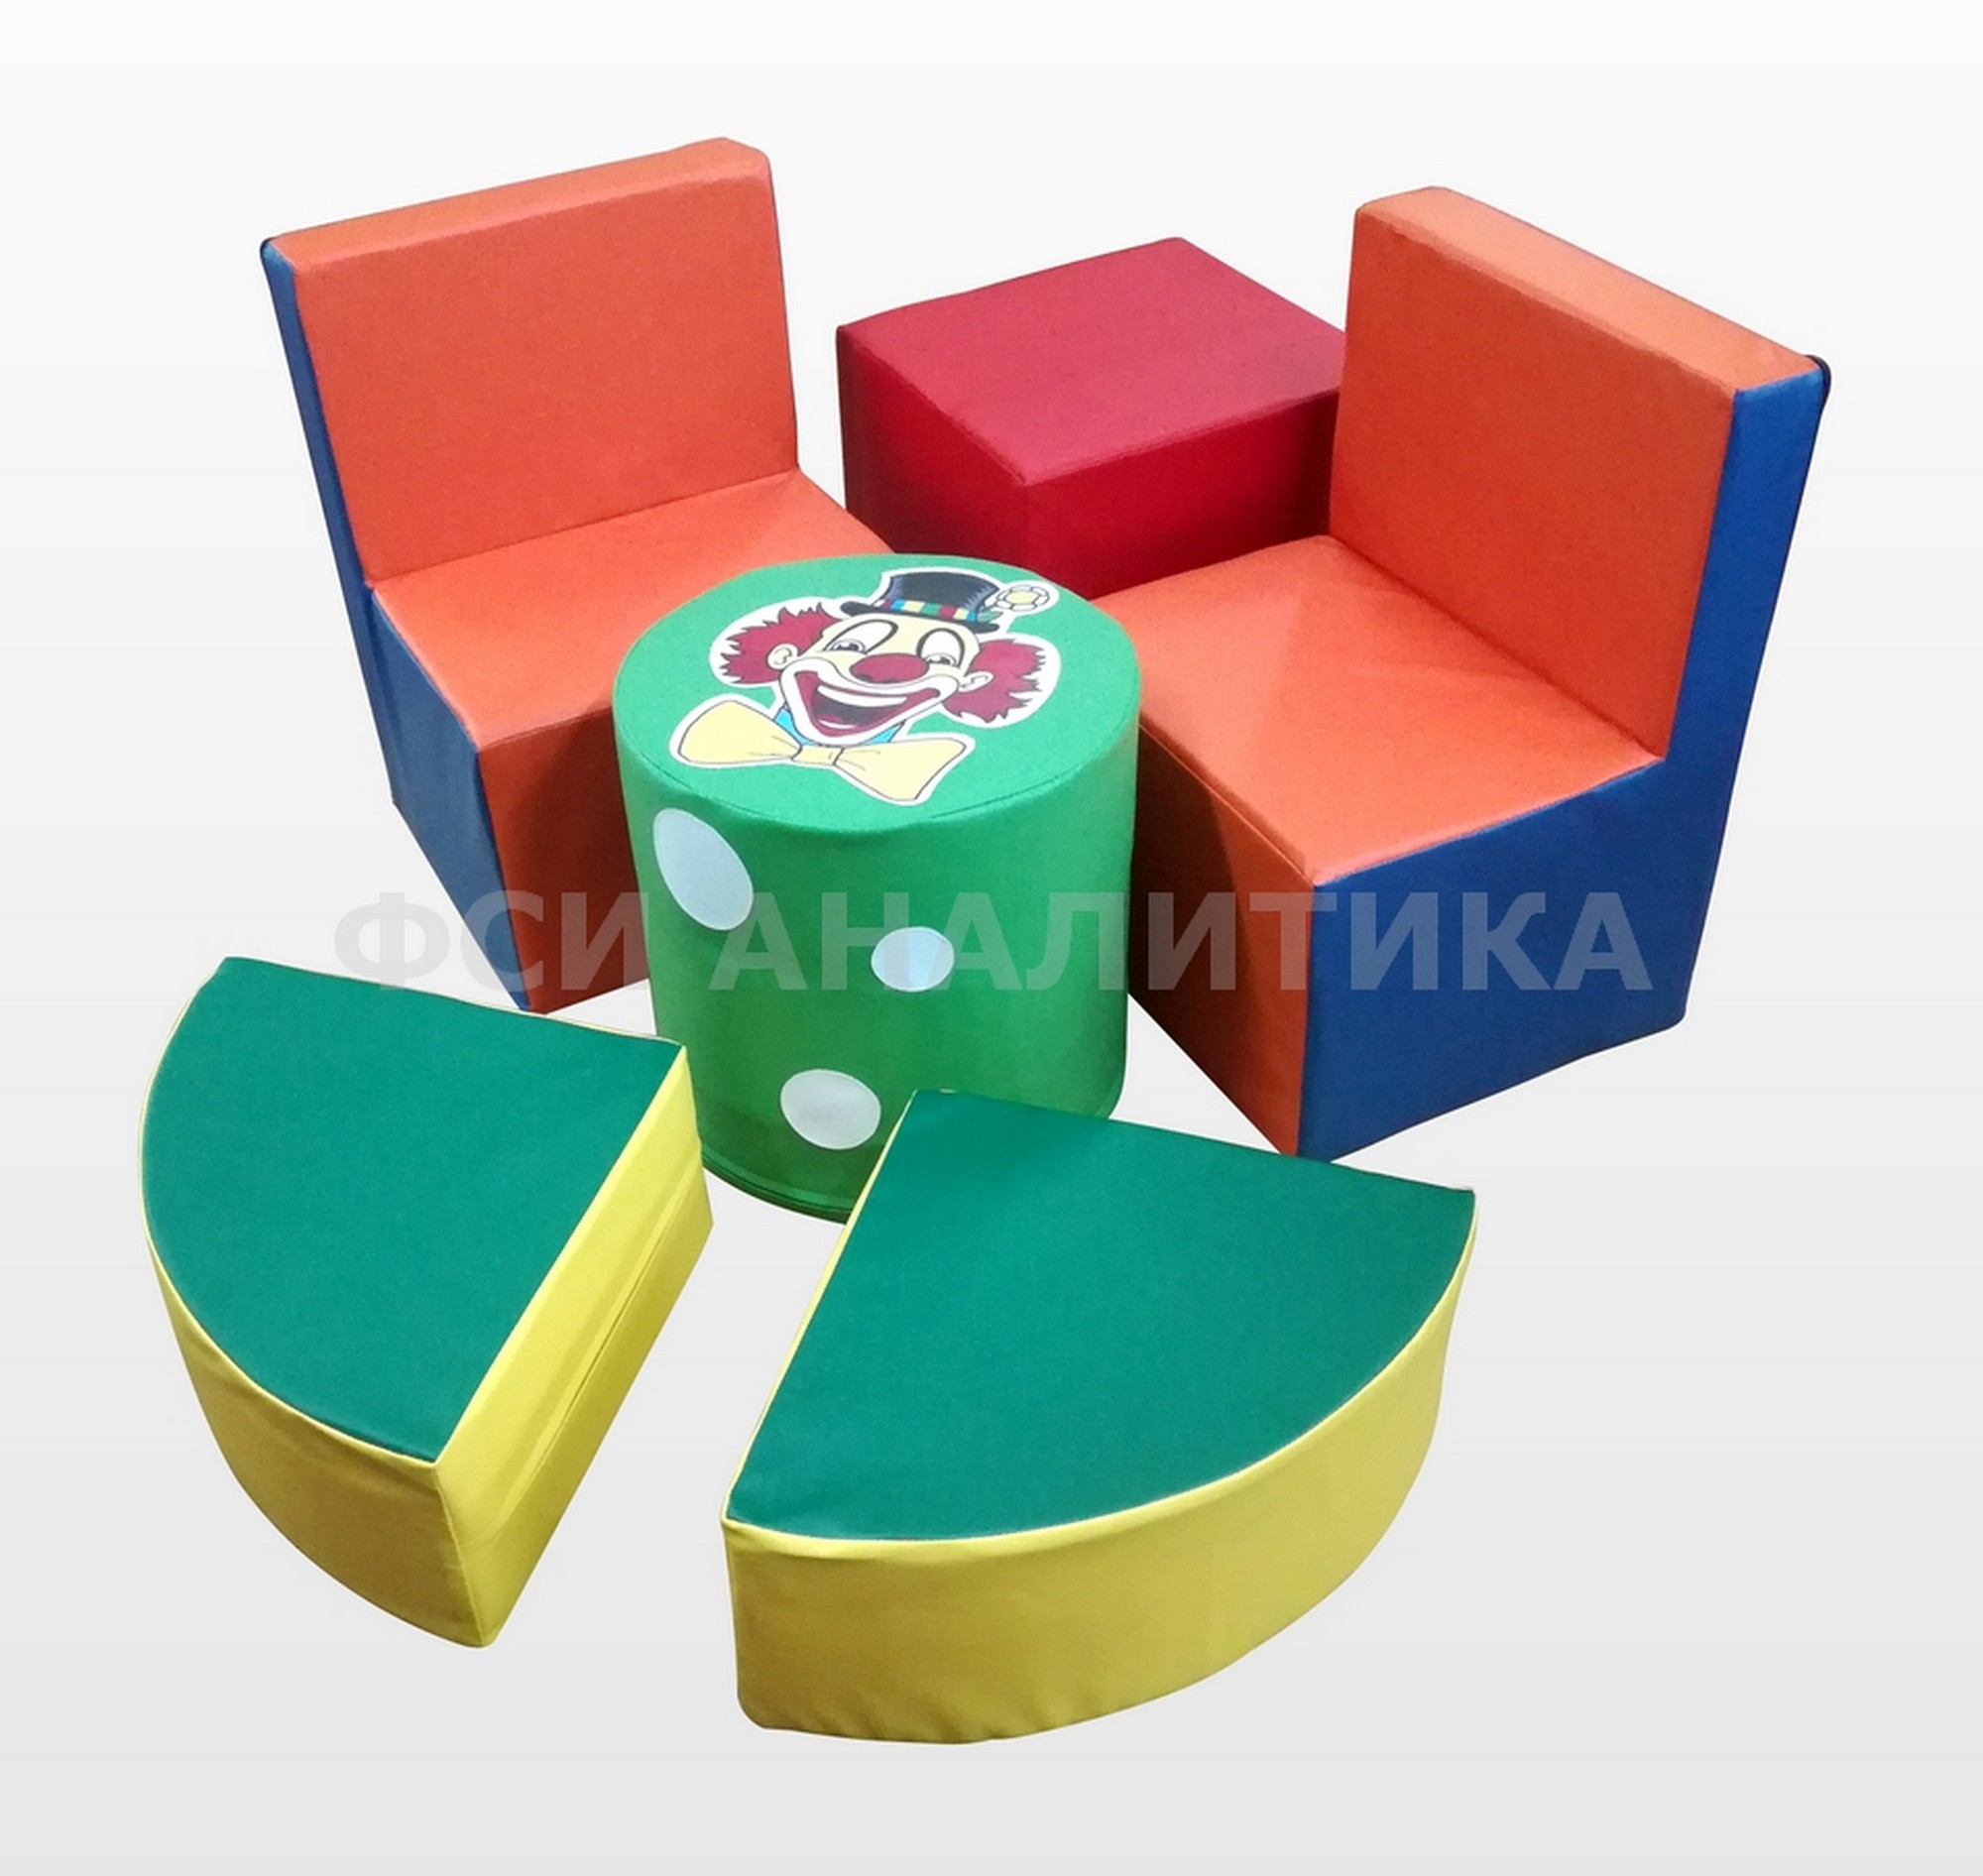 Детский игровой комплект мягкой мебели - Веселый клоун ФСИ 10295 2000_1892